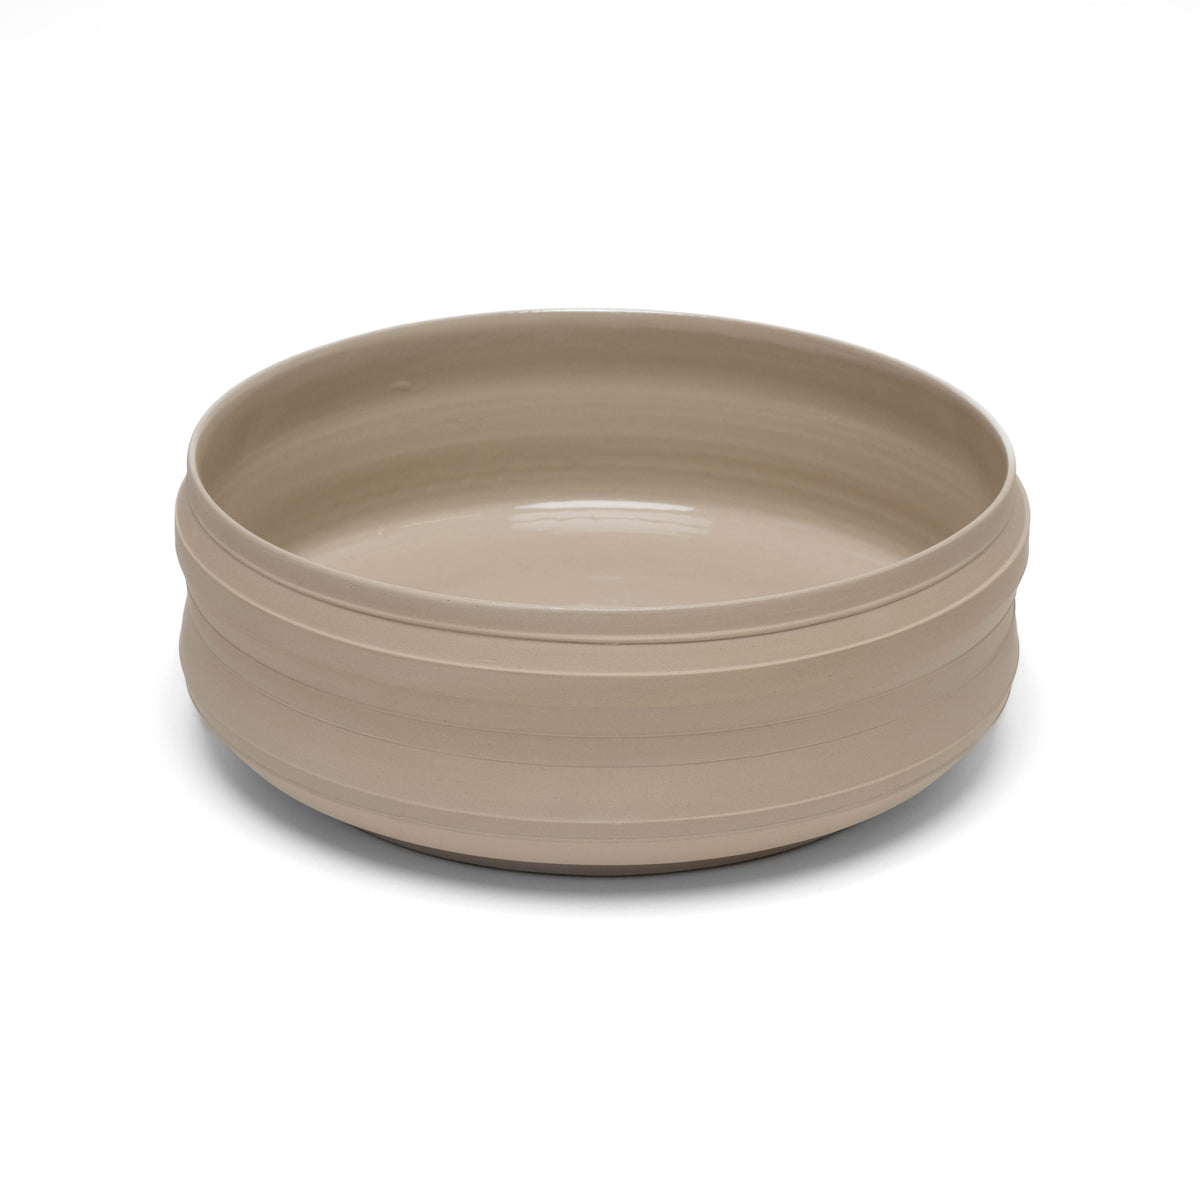 Bowl stoneware, unique piece